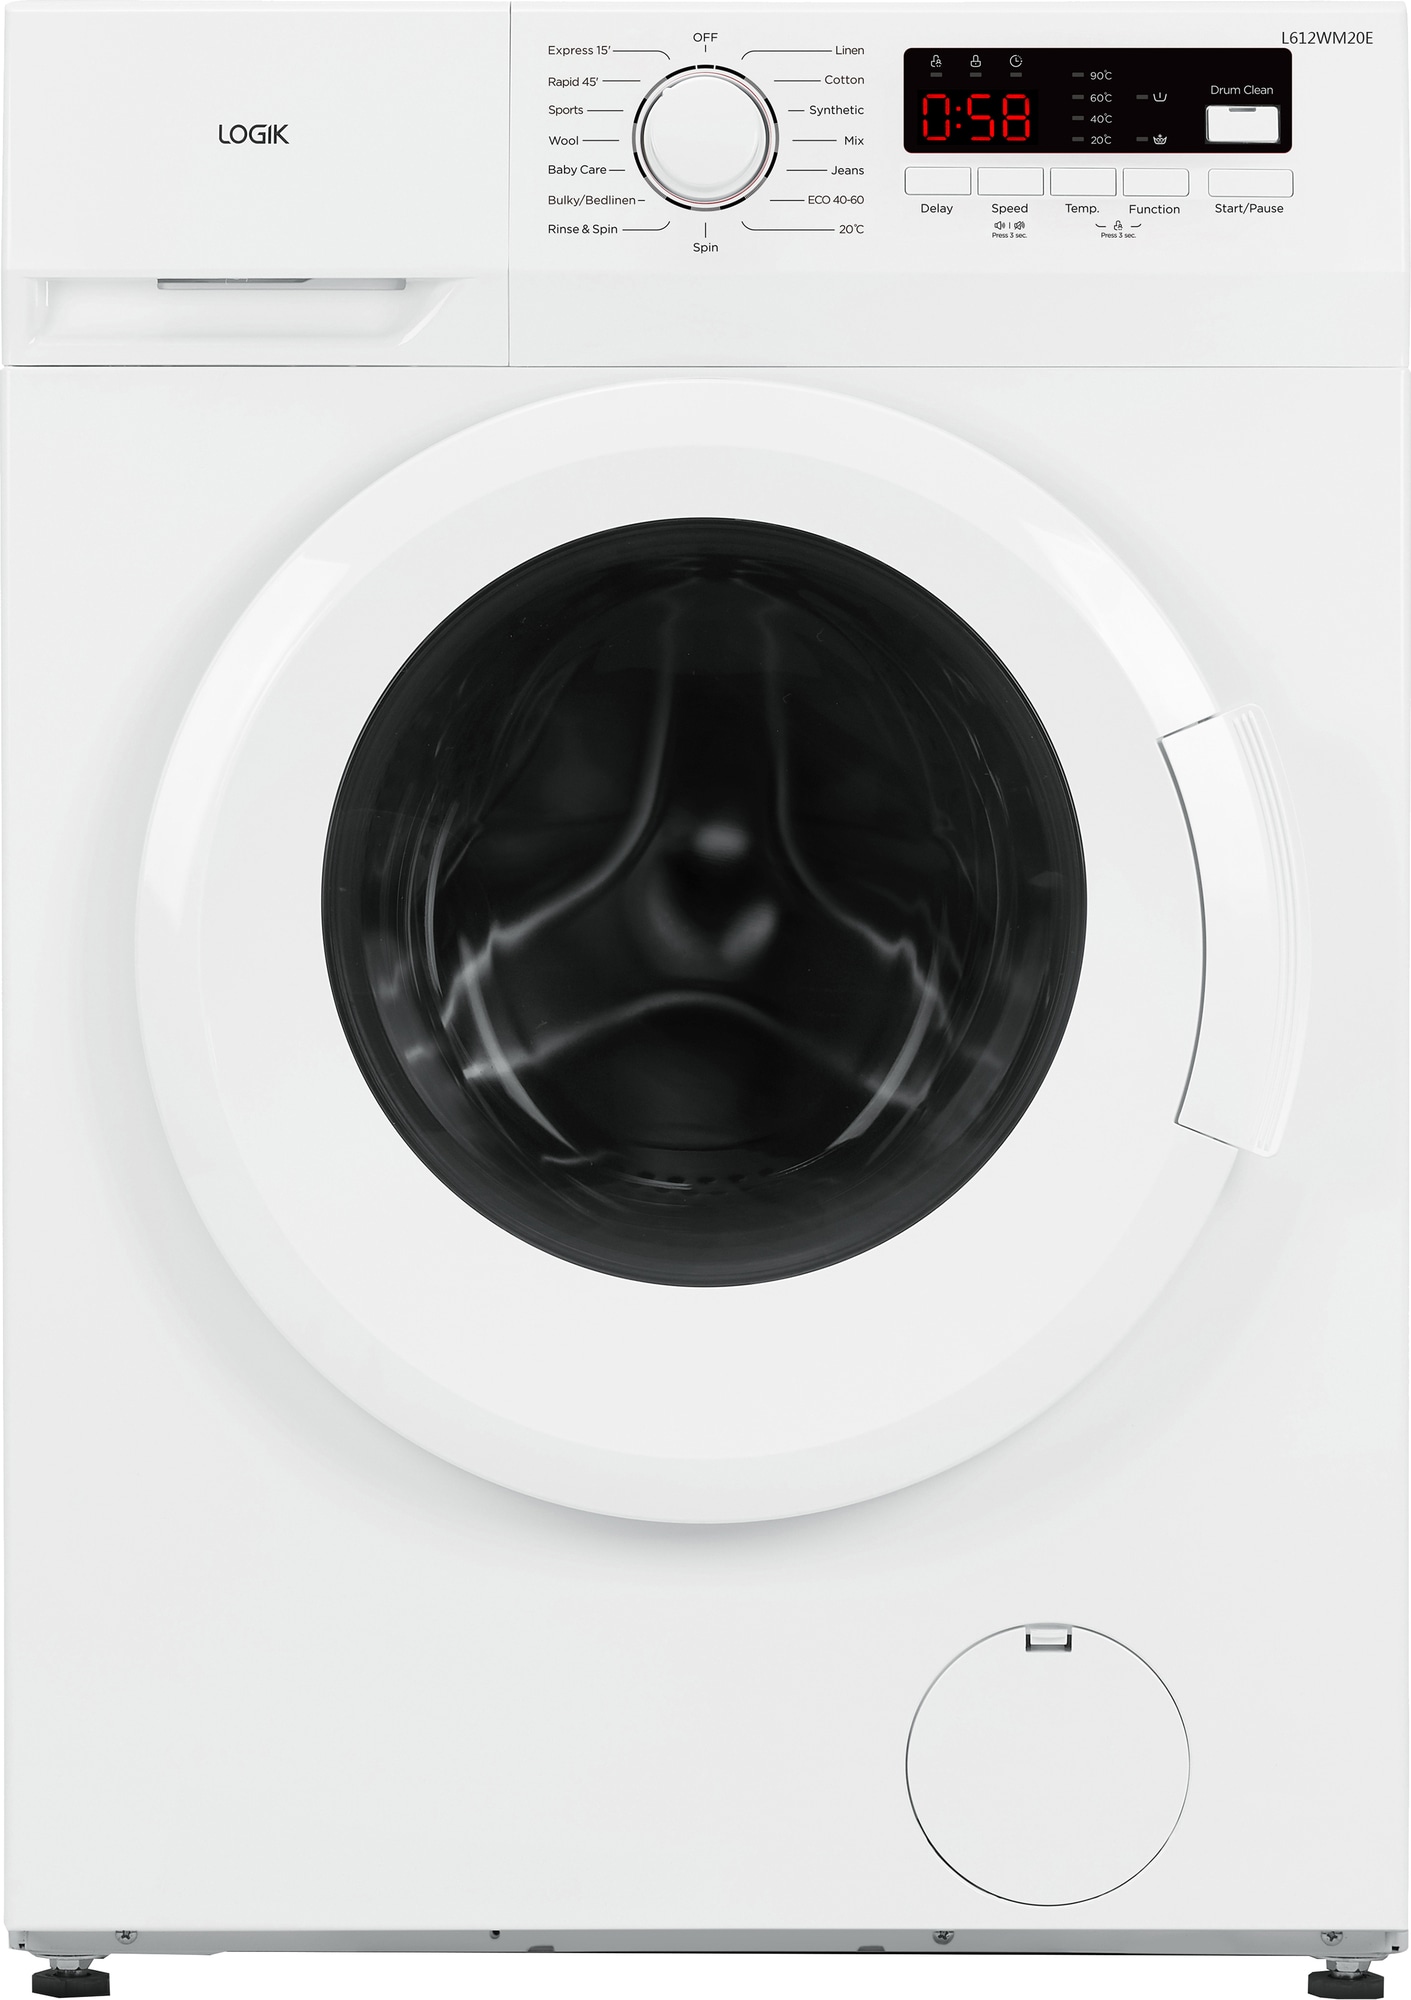 Billig vaskemaskine | Køb en god og billig vaskemaskine her!